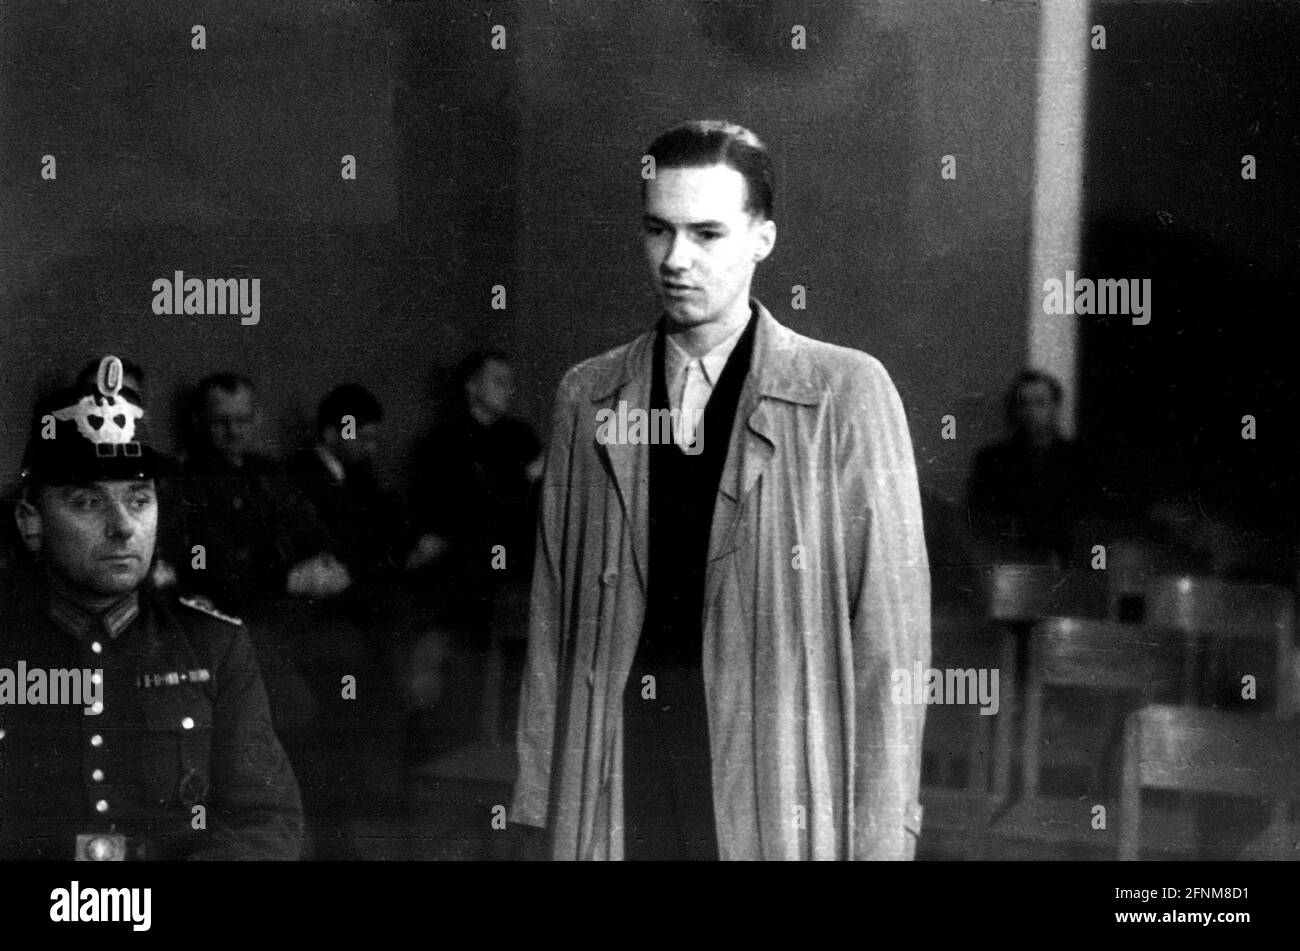 Nazisme / national-socialisme, résistance, procès à la Cour populaire, personne non identifiée, 1944 / 1945, USAGE ÉDITORIAL EXCLUSIF Banque D'Images